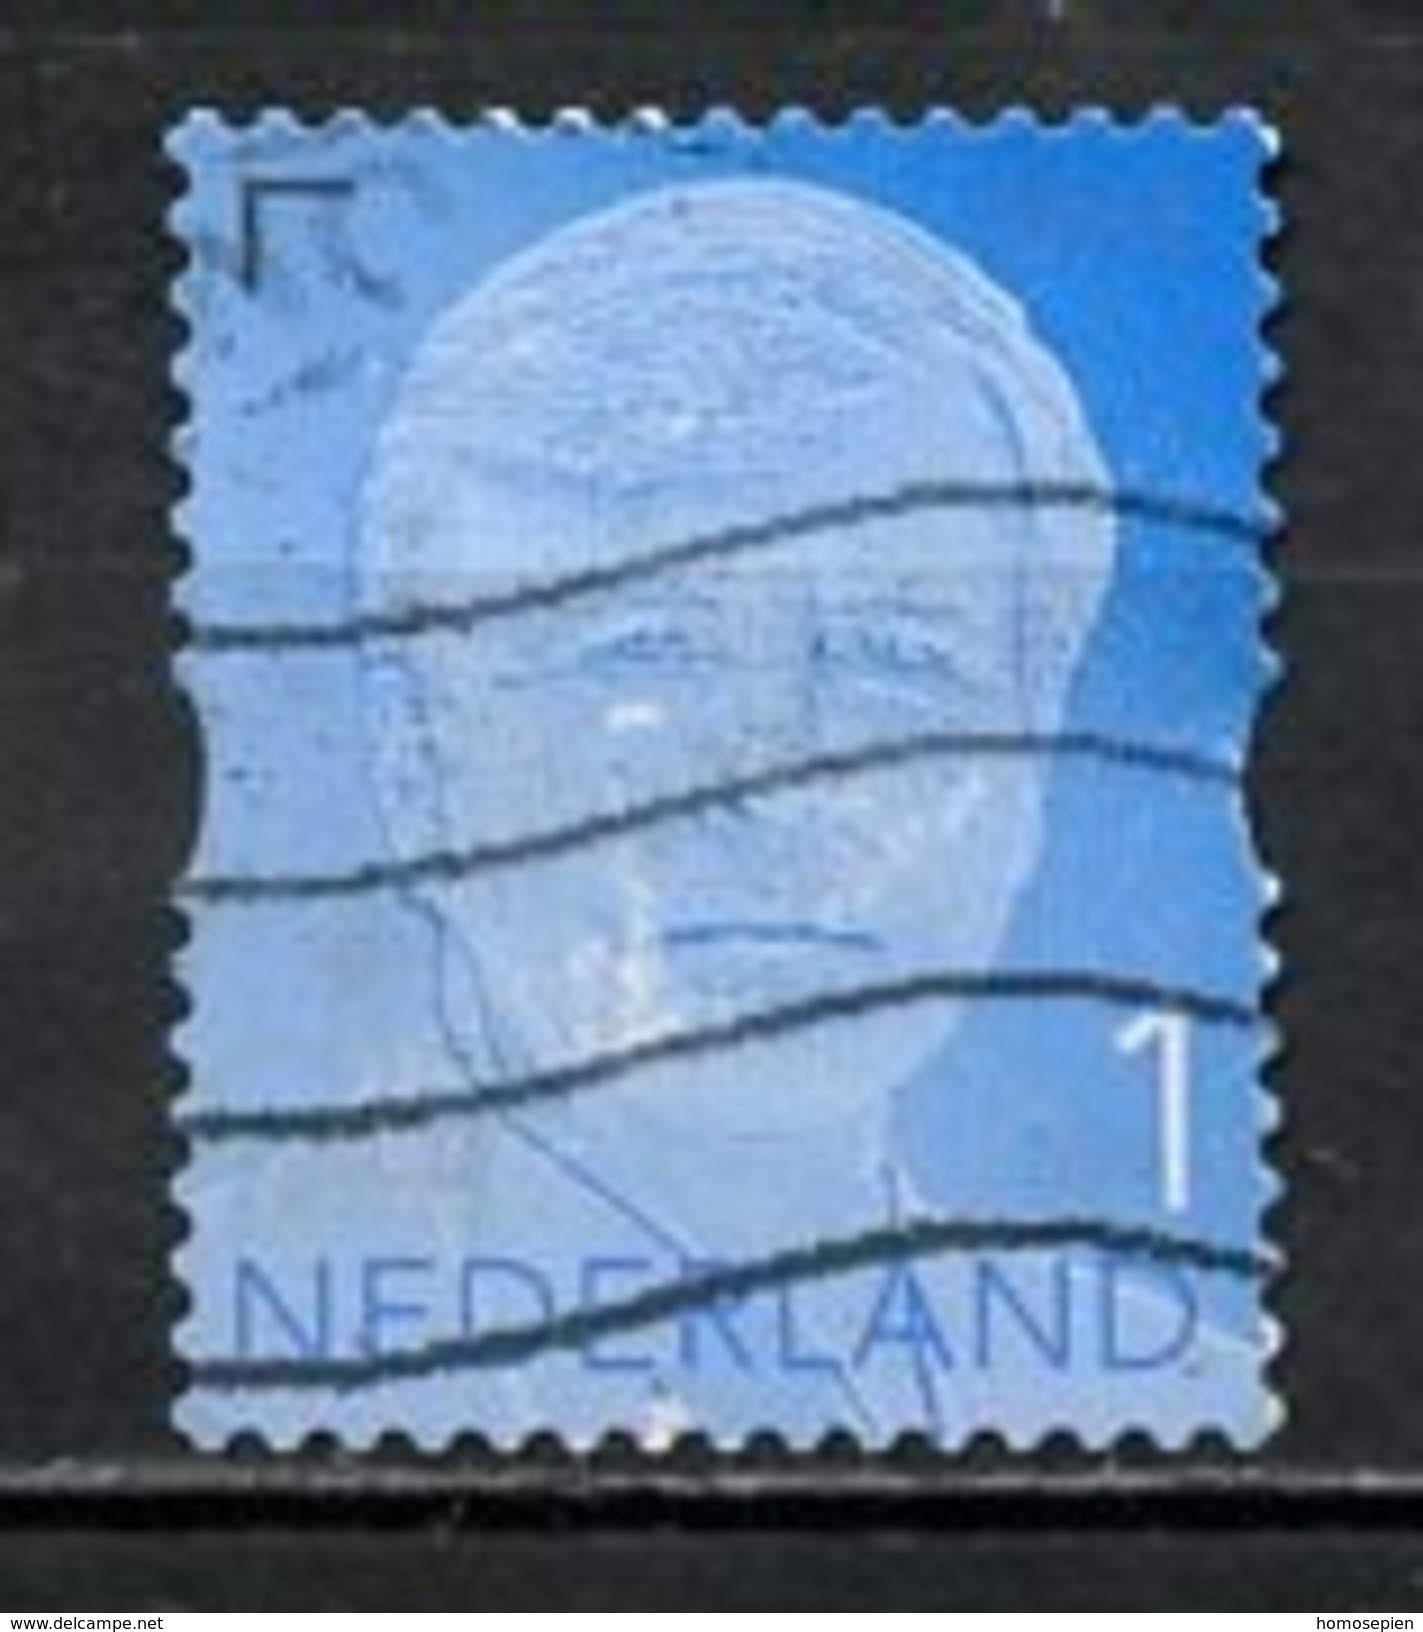 Pays Bas - Netherlands - Niederlande 2015 Y&T N°3249 - Michel N°3323 (o) - (svi 1) Prince Alexander - Oblitérés